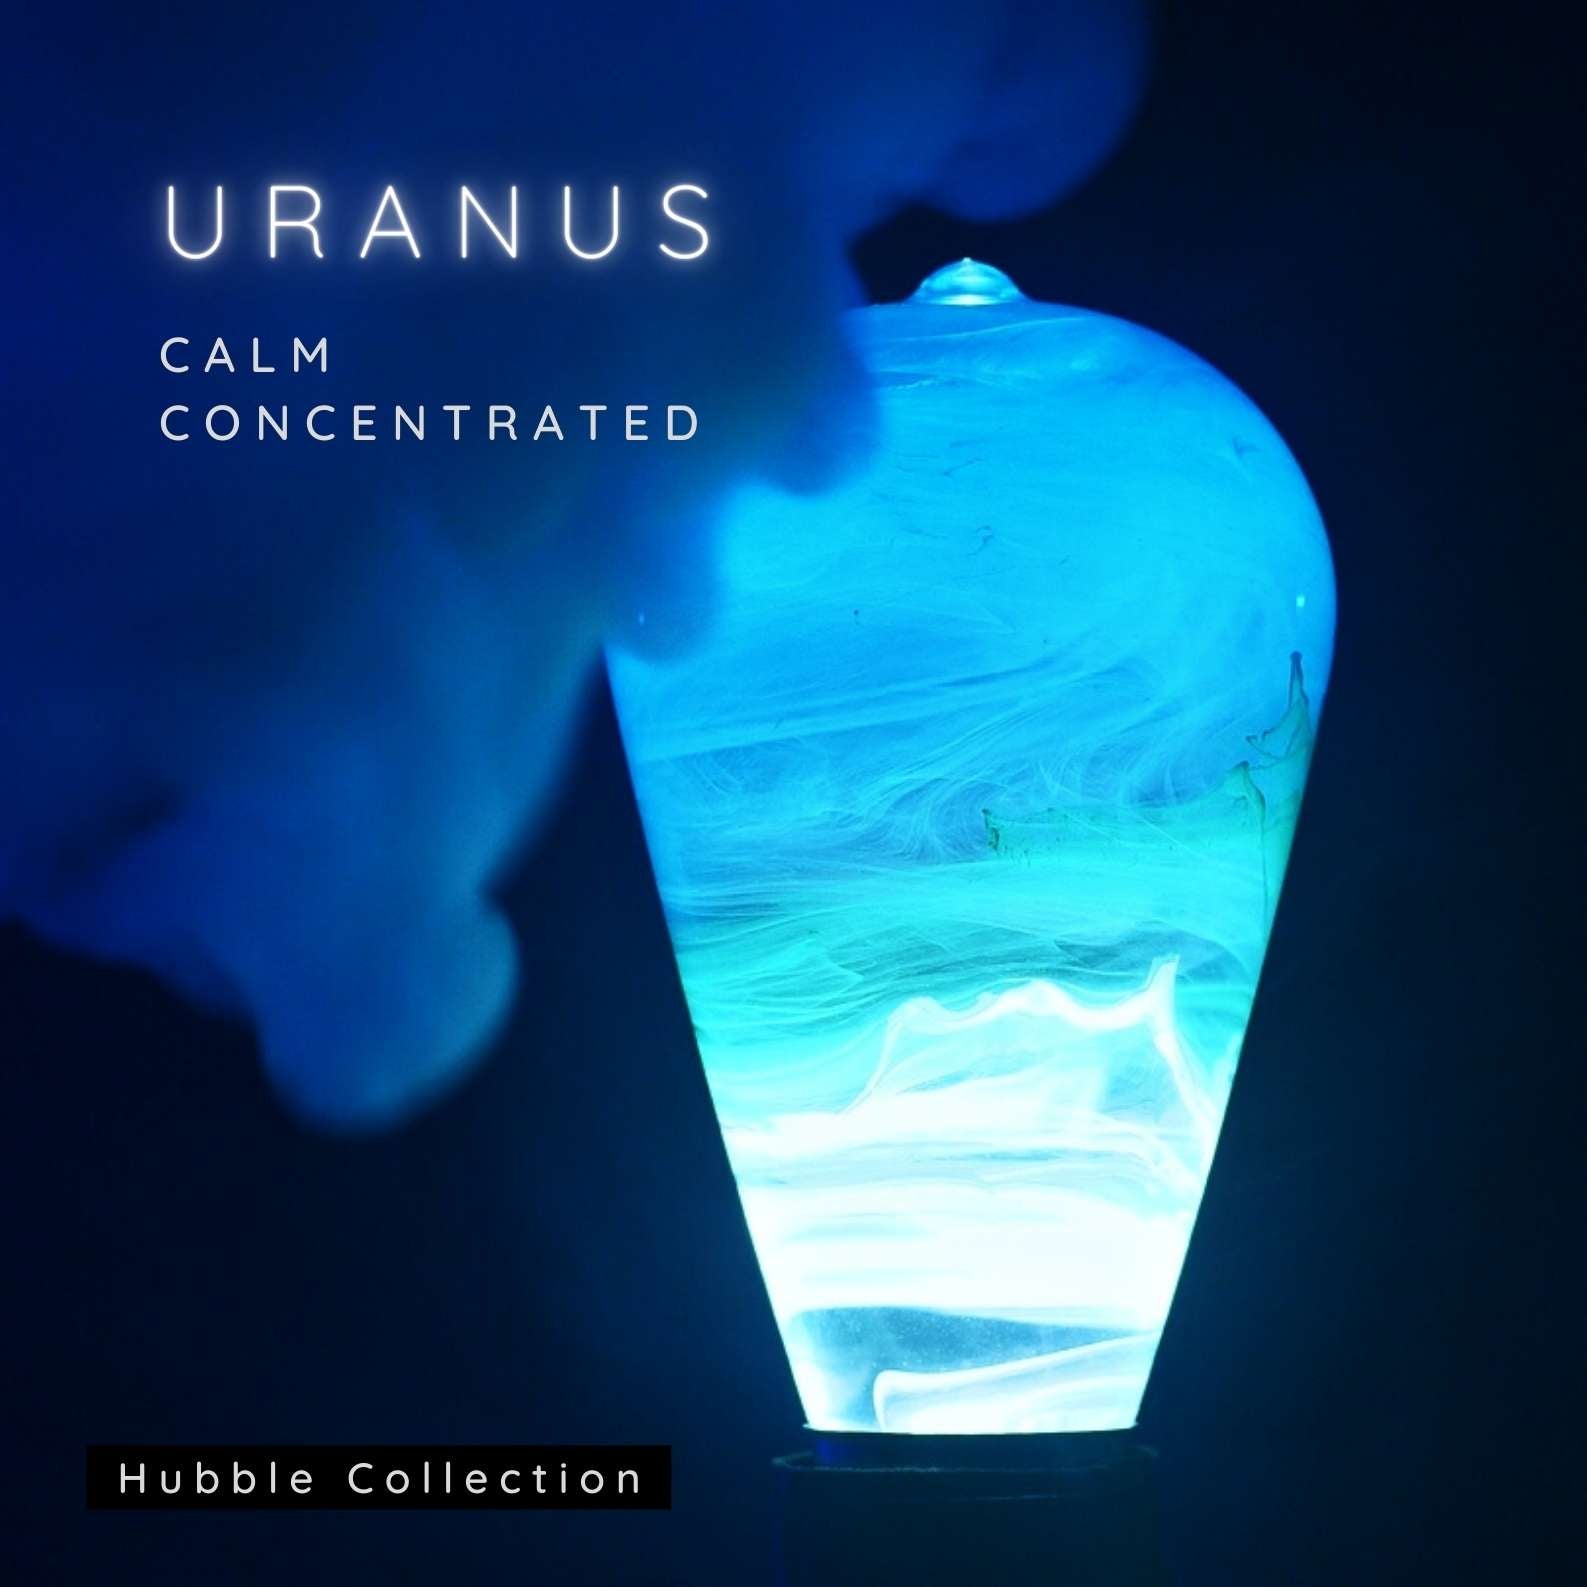 The Uranus™